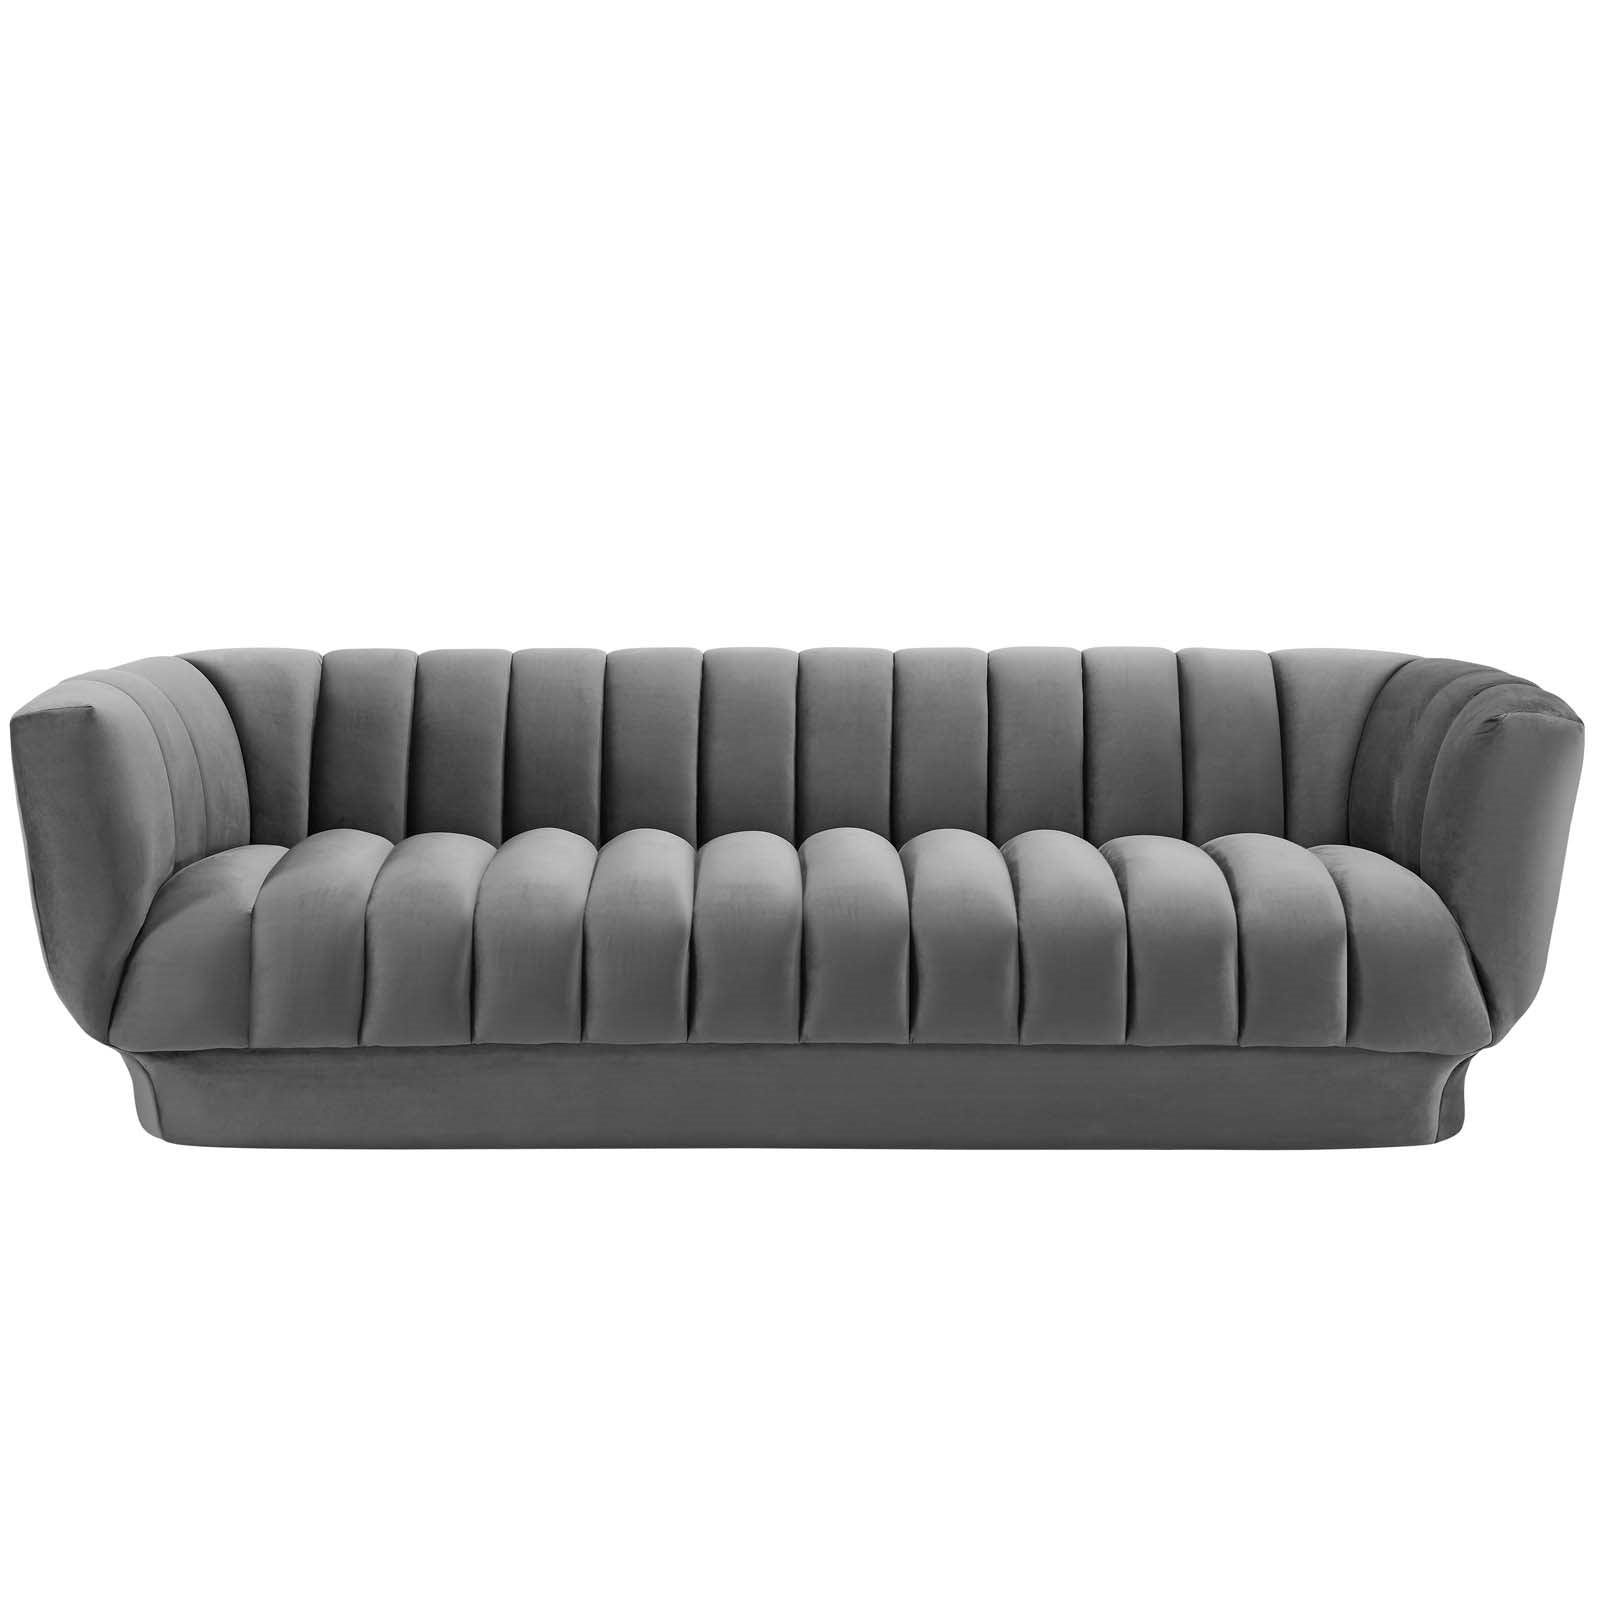 Lyla Tufted Velvet Sofa in Gray - Euro Living Furniture